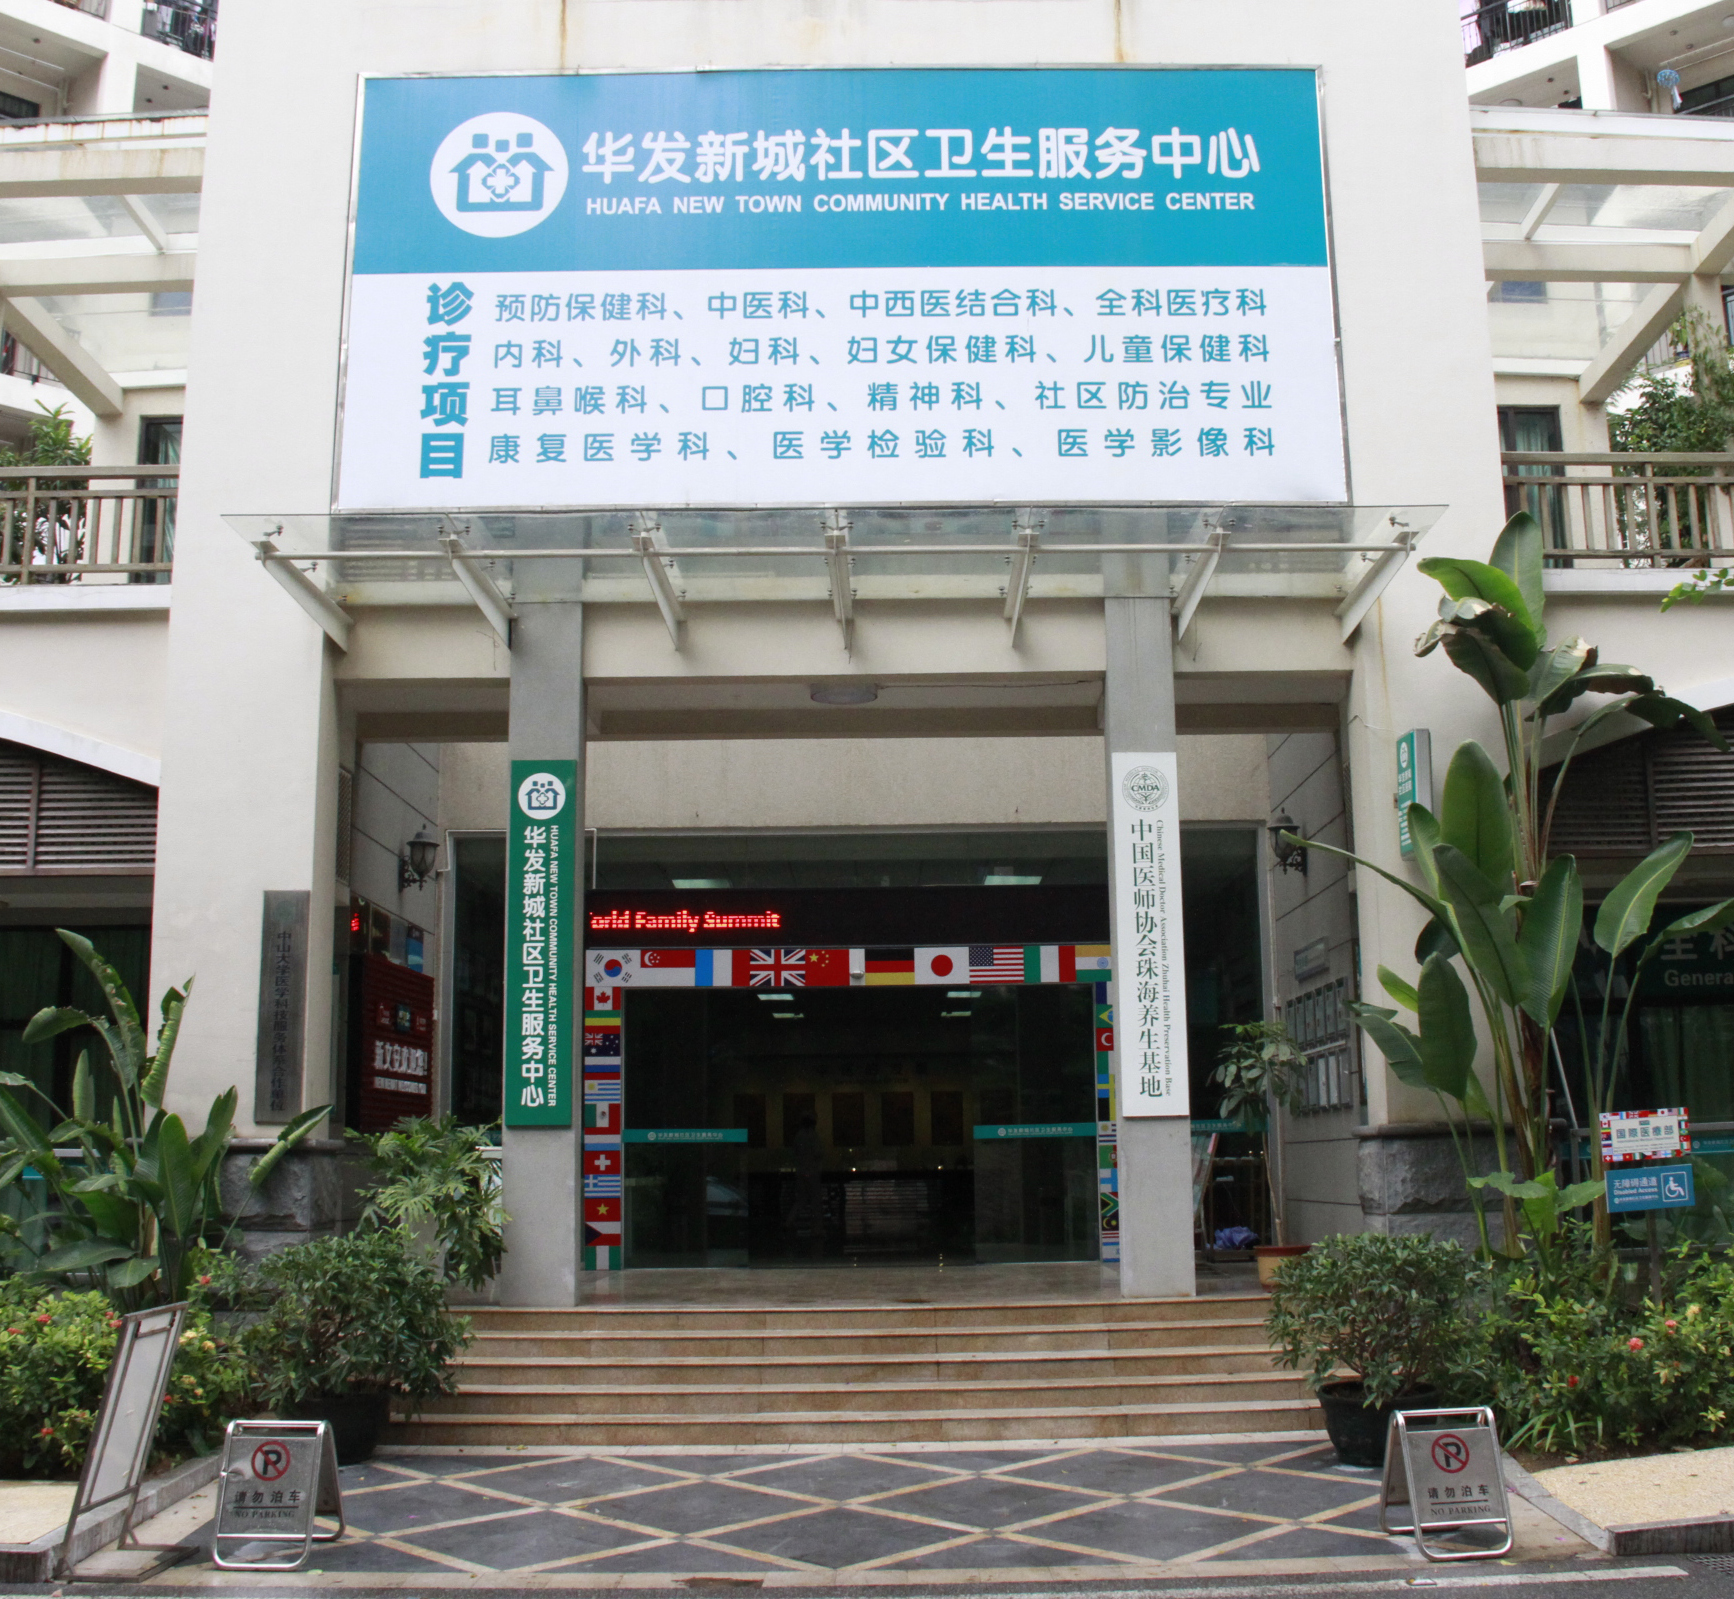 華發新城社區衛生服務中心